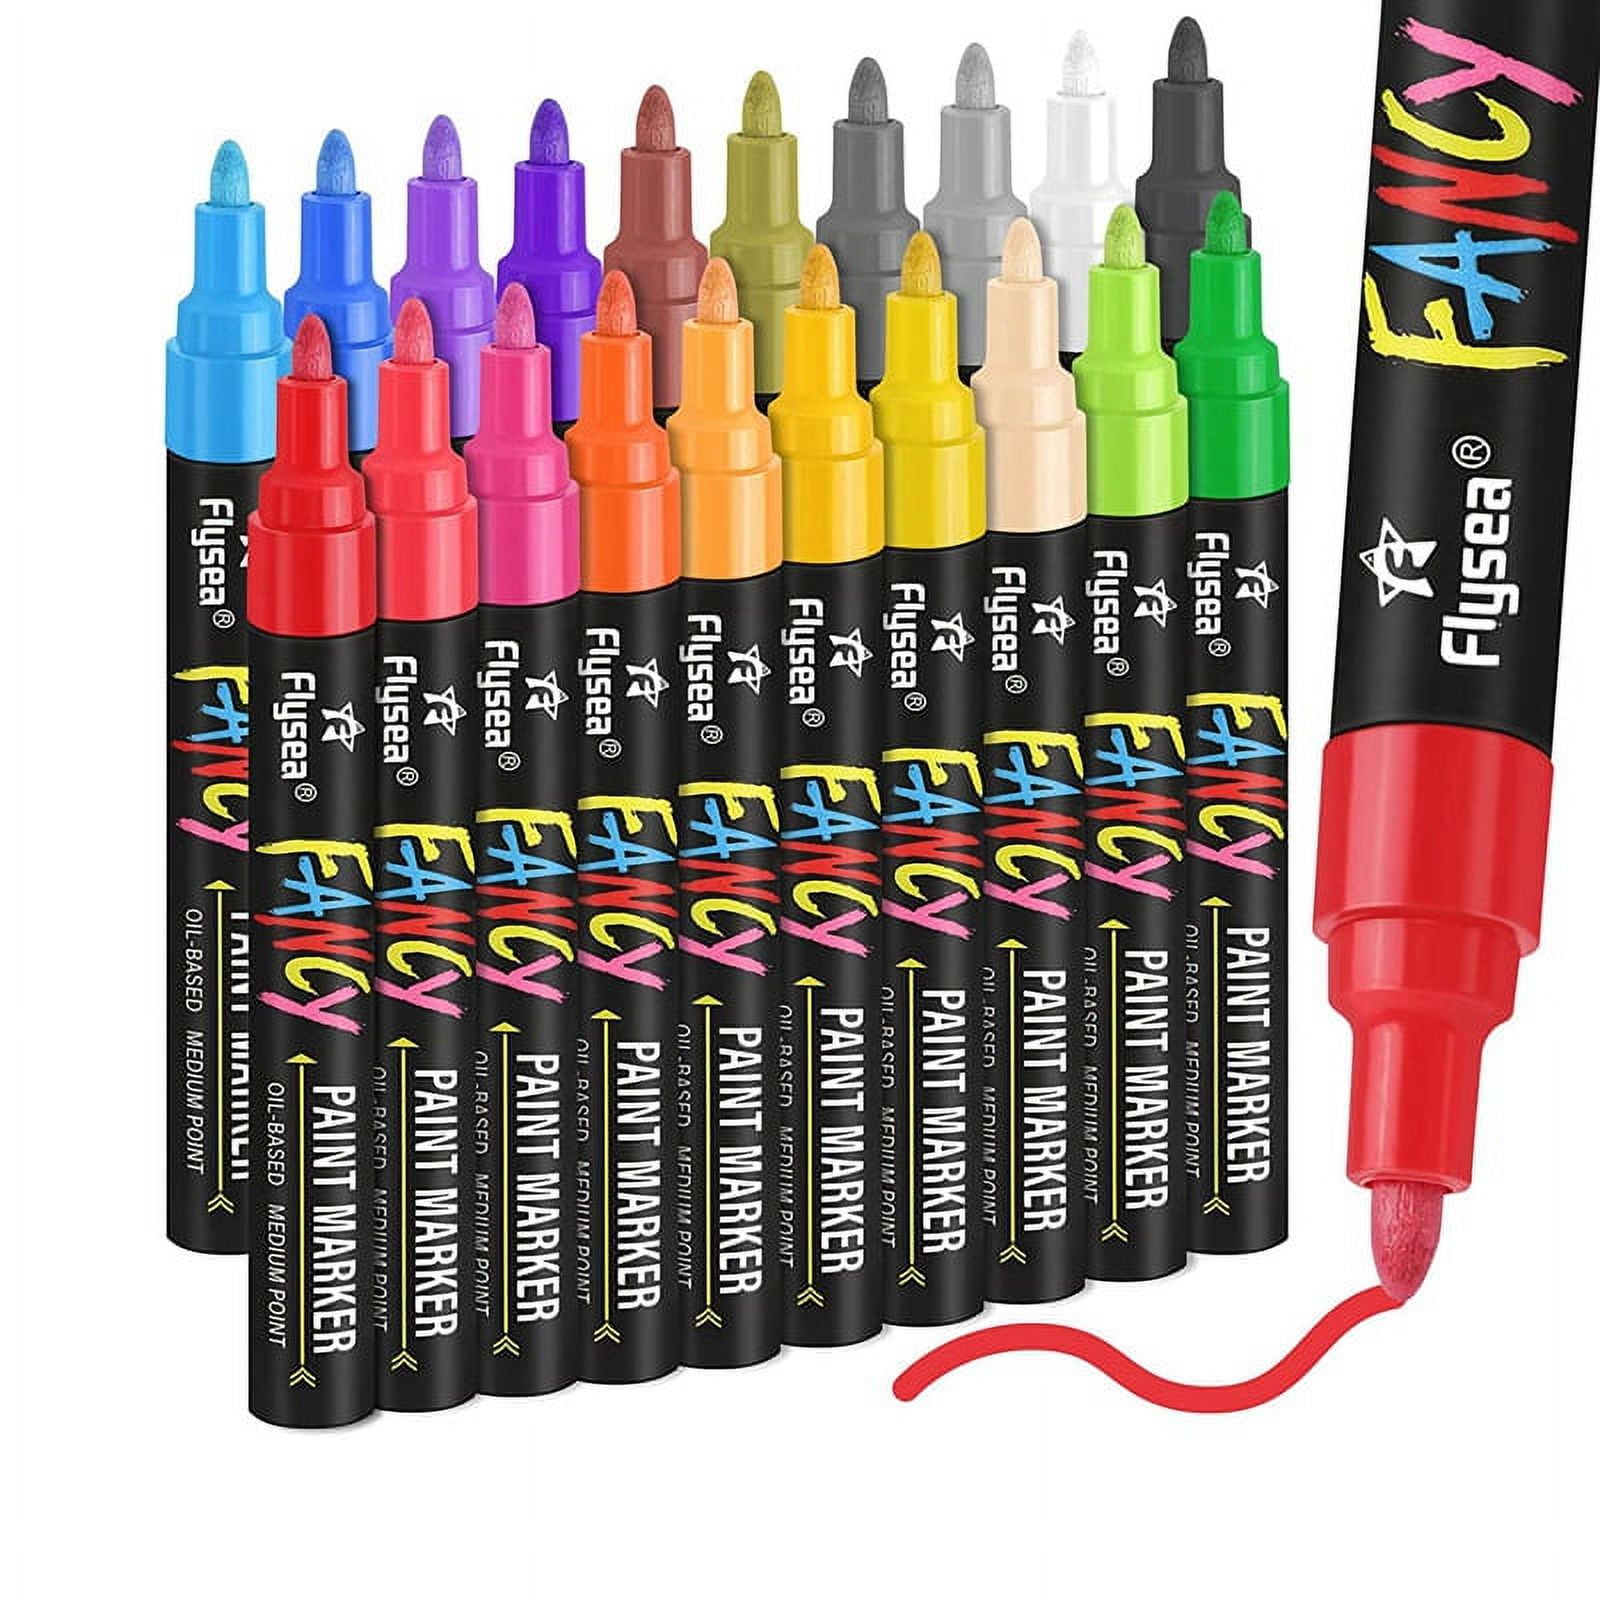 12 Colors Acrylic Paint Marker Pen Set Waterproof Permanent